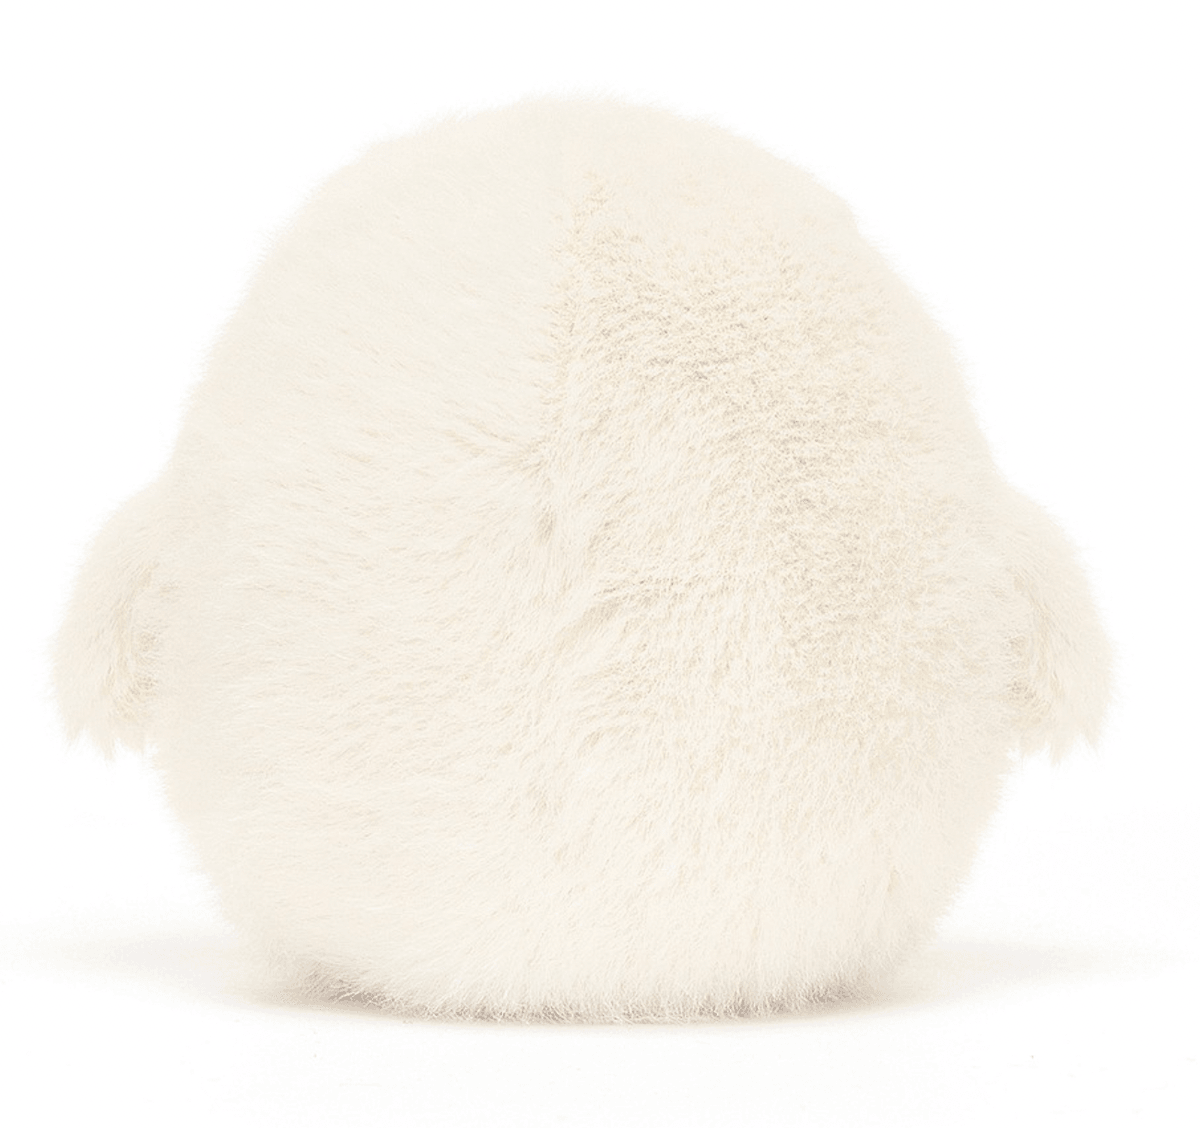 Jellycat: przytulanka sowa śnieżna Barn Snowy Owling 11 cm - Noski Noski